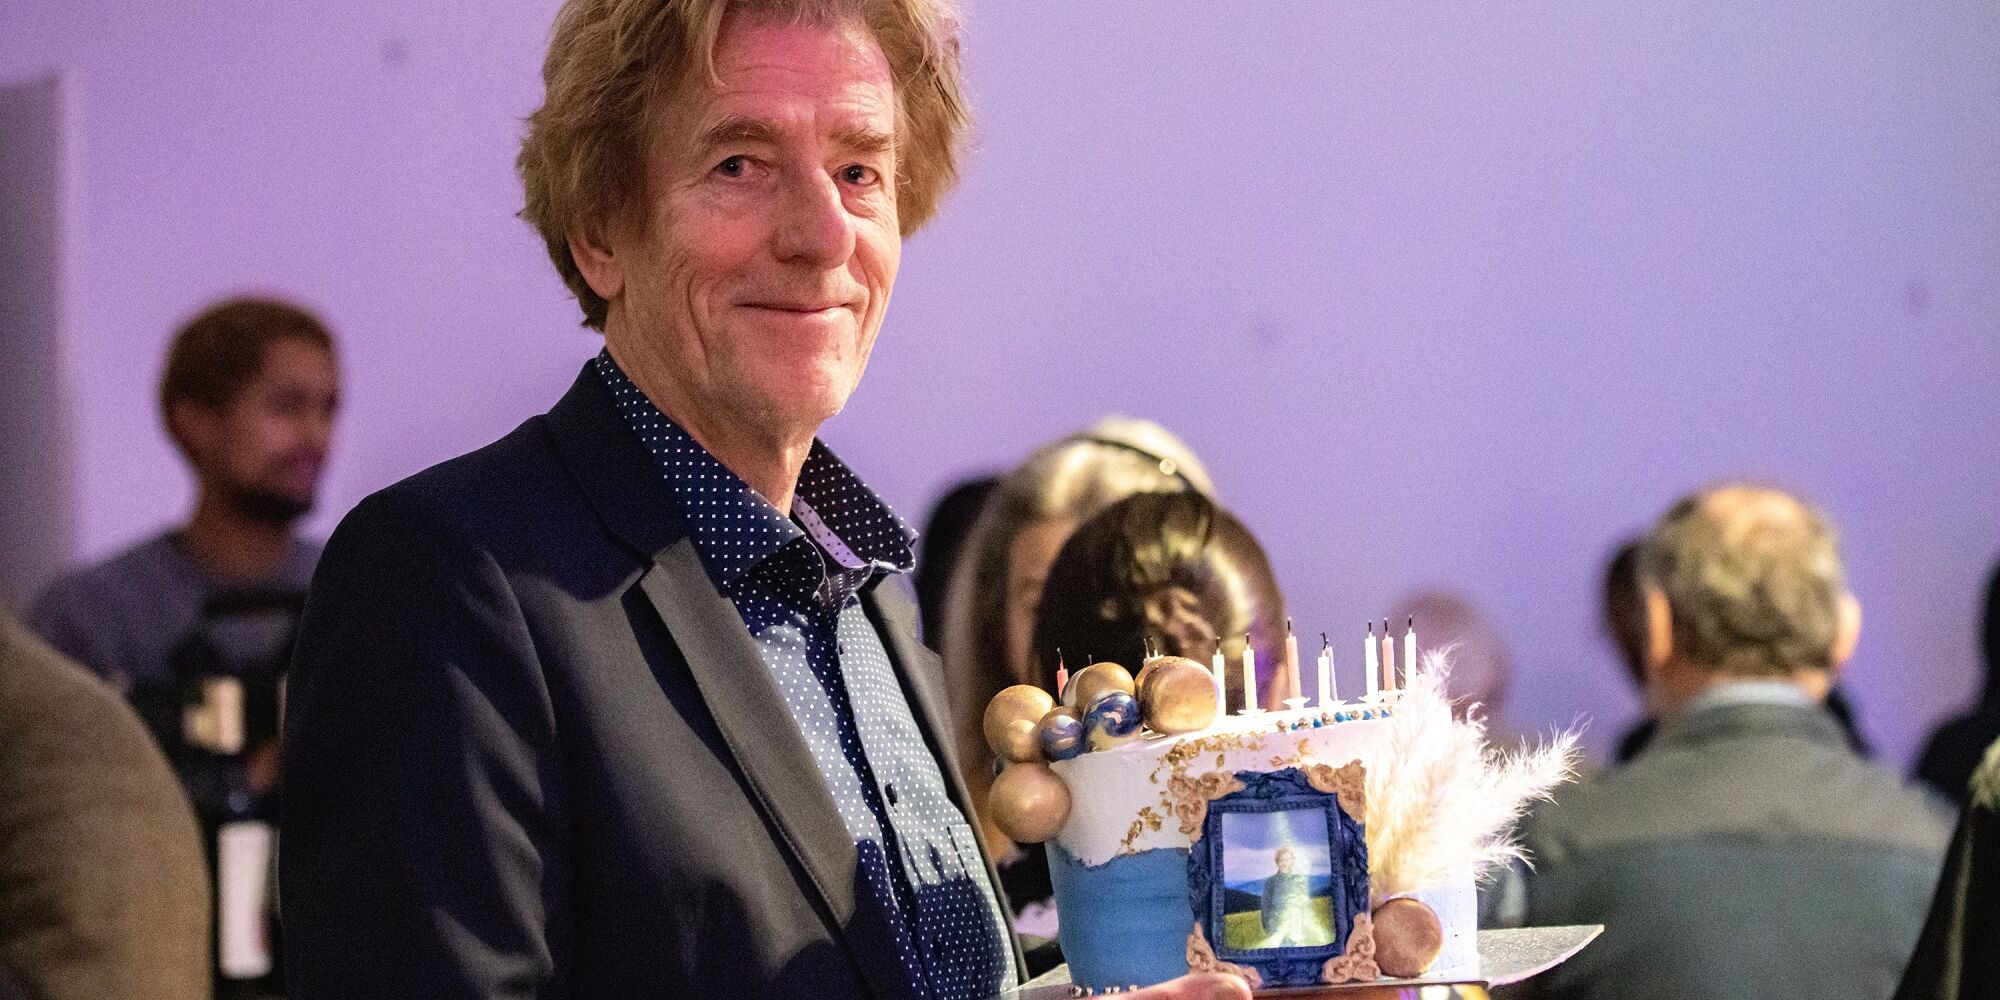 Hier sieht man man Viktor Schenkel auf unserem Benefizabend 2022. Er hält eine reich dekorierte Torte in der Hand, die er als nachträgliches Geburtstagsgeschenk erhalten hat. Er lächelt in die Kamera.